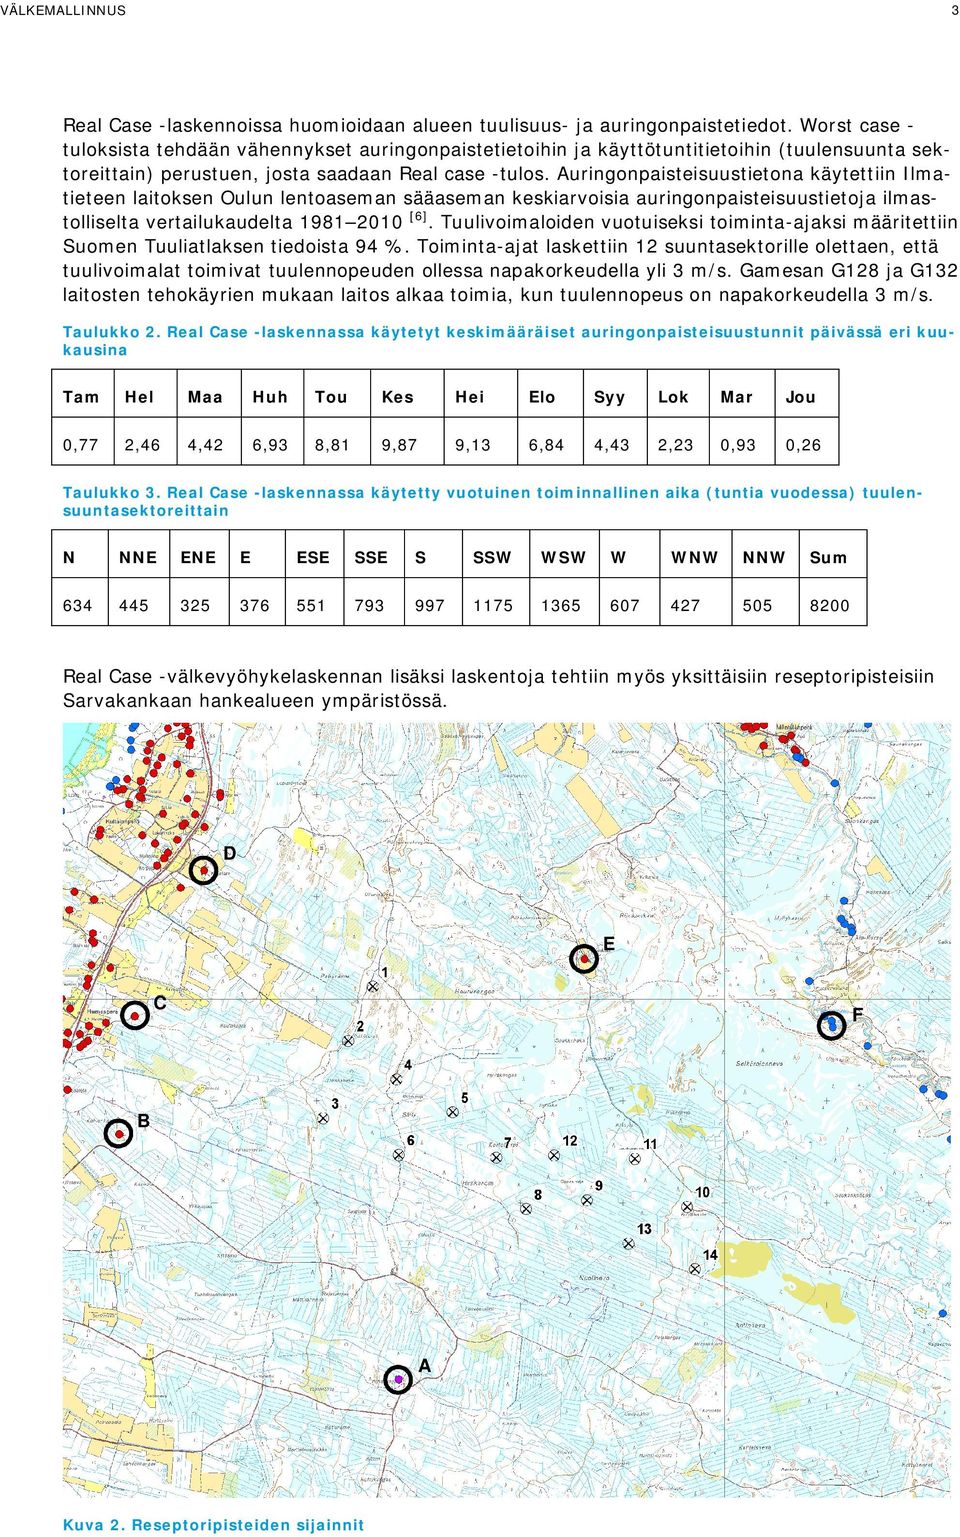 Auringonpaisteisuustietona käytettiin Ilmatieteen laitoksen Oulun lentoaseman sääaseman keskiarvoisia auringonpaisteisuustietoja ilmastolliselta vertailukaudelta 1981 2010 [6].